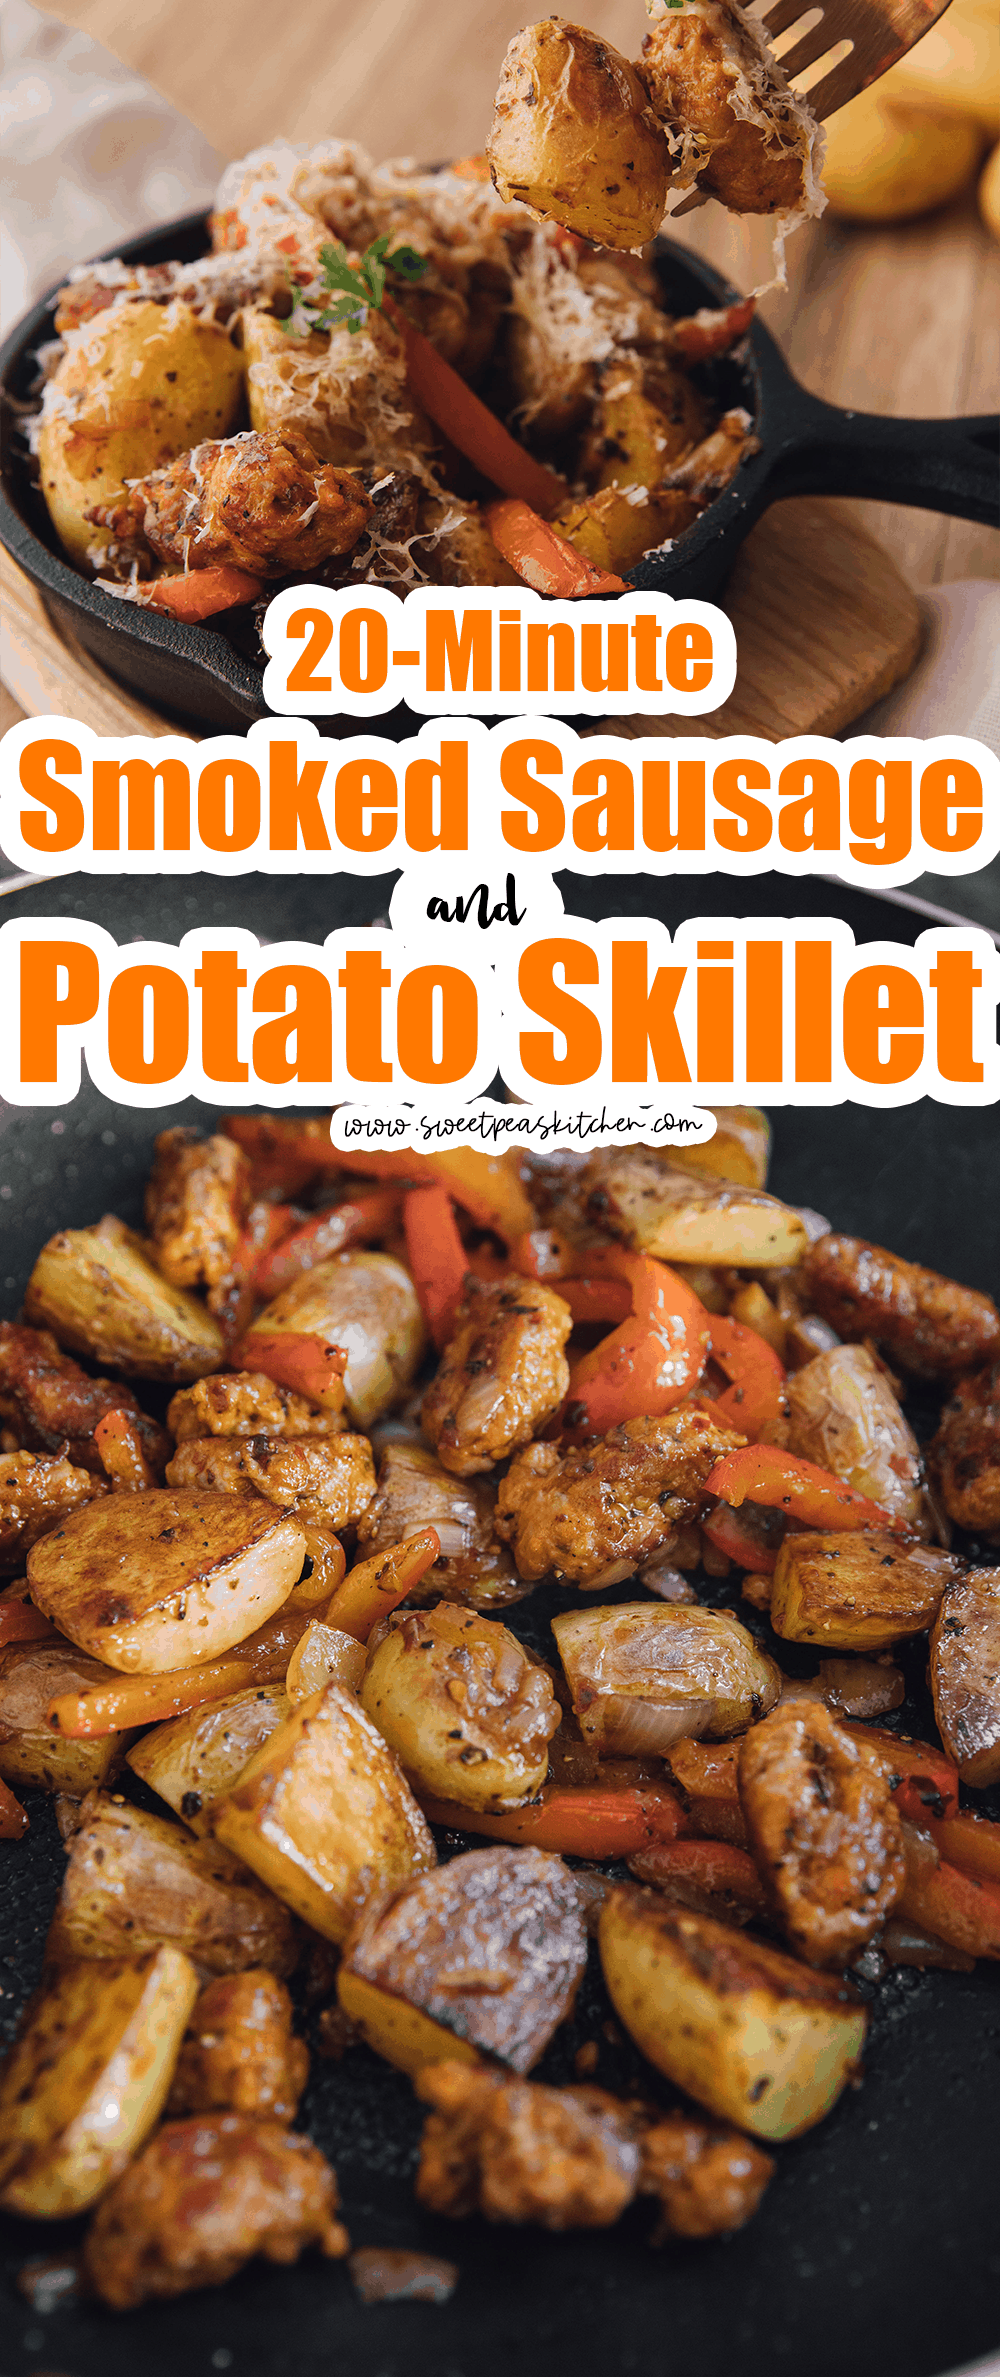 20 Minute Smoked Sausage and Potato Skillet